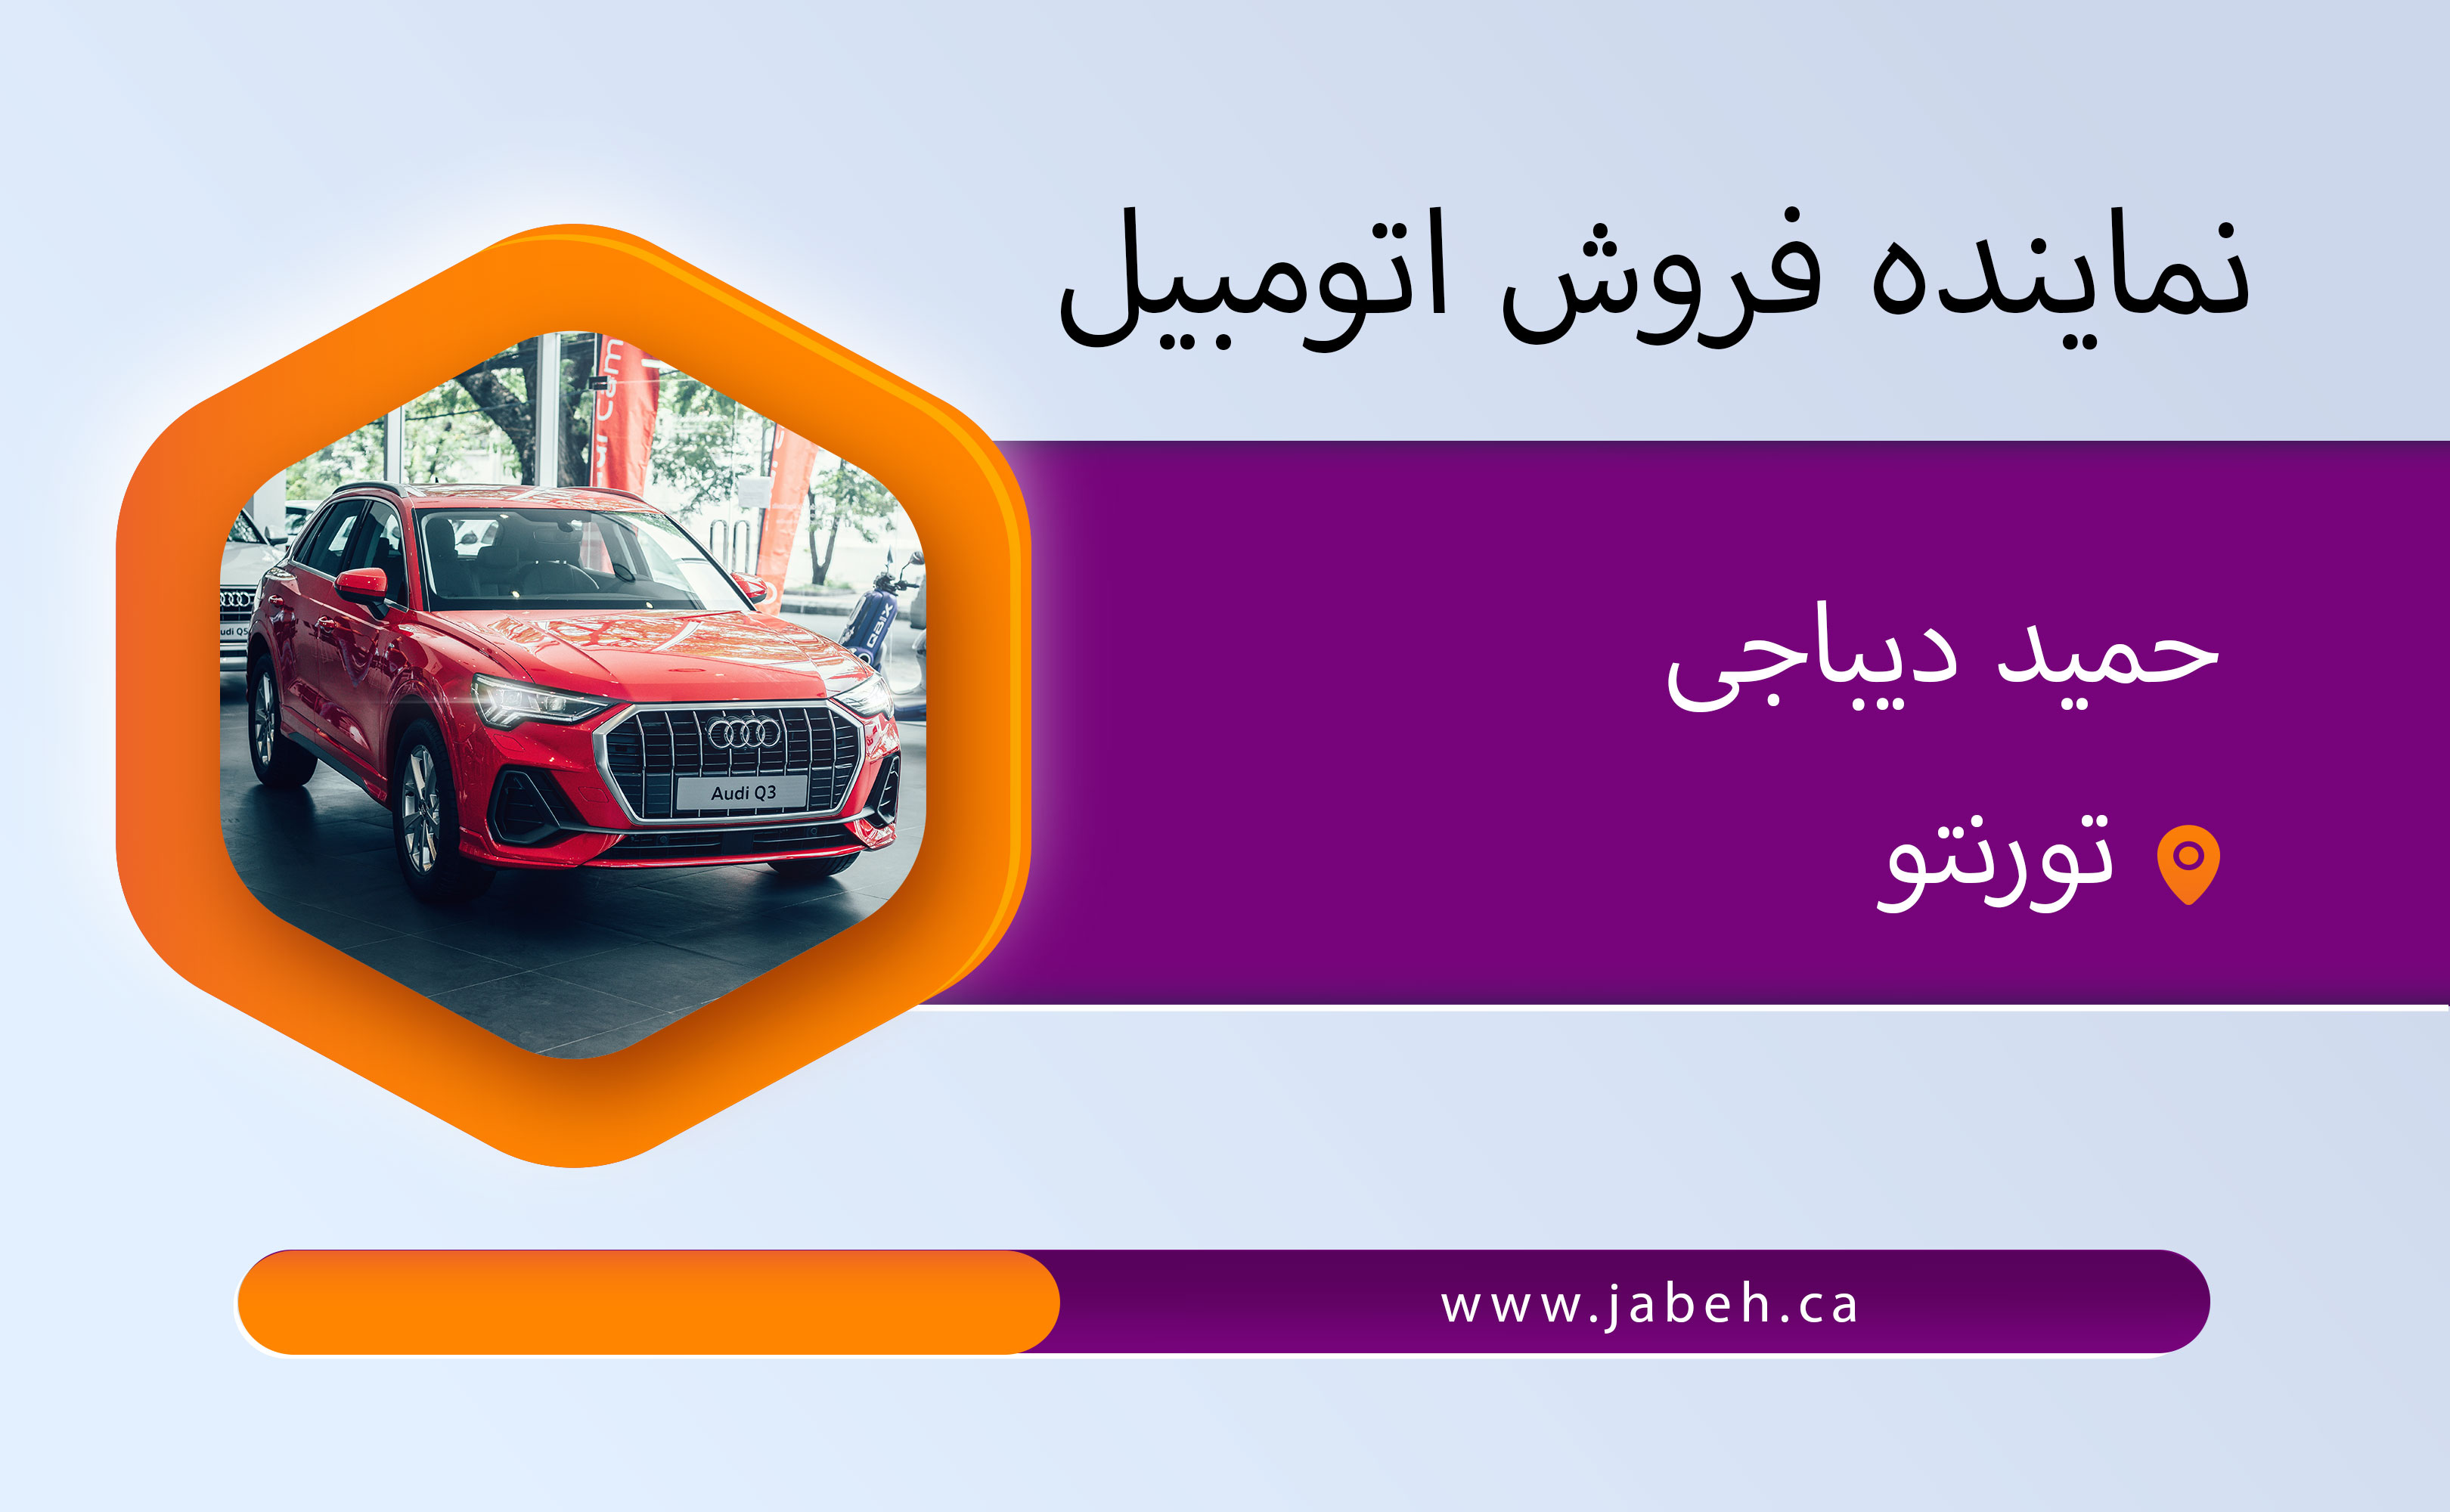 نماینده ایرانی فروش اتومبیل حمید دیباجی در تورنتو